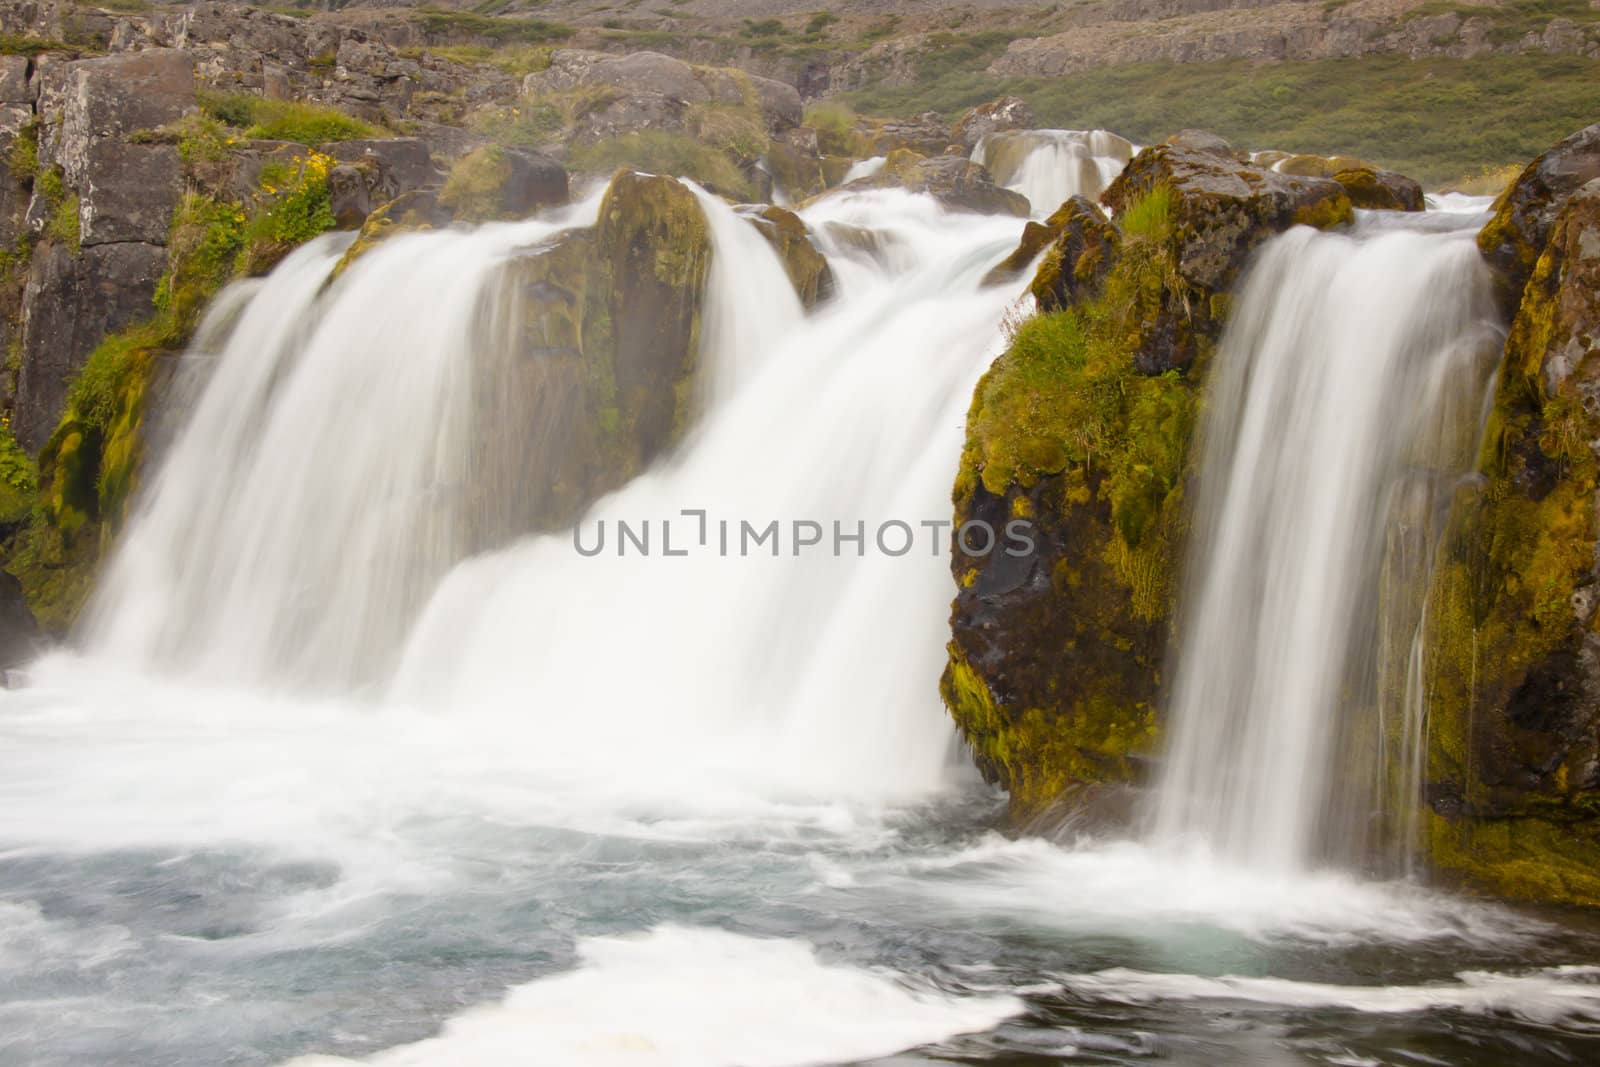 Part of Dynjandi waterfall - Iceland by parys